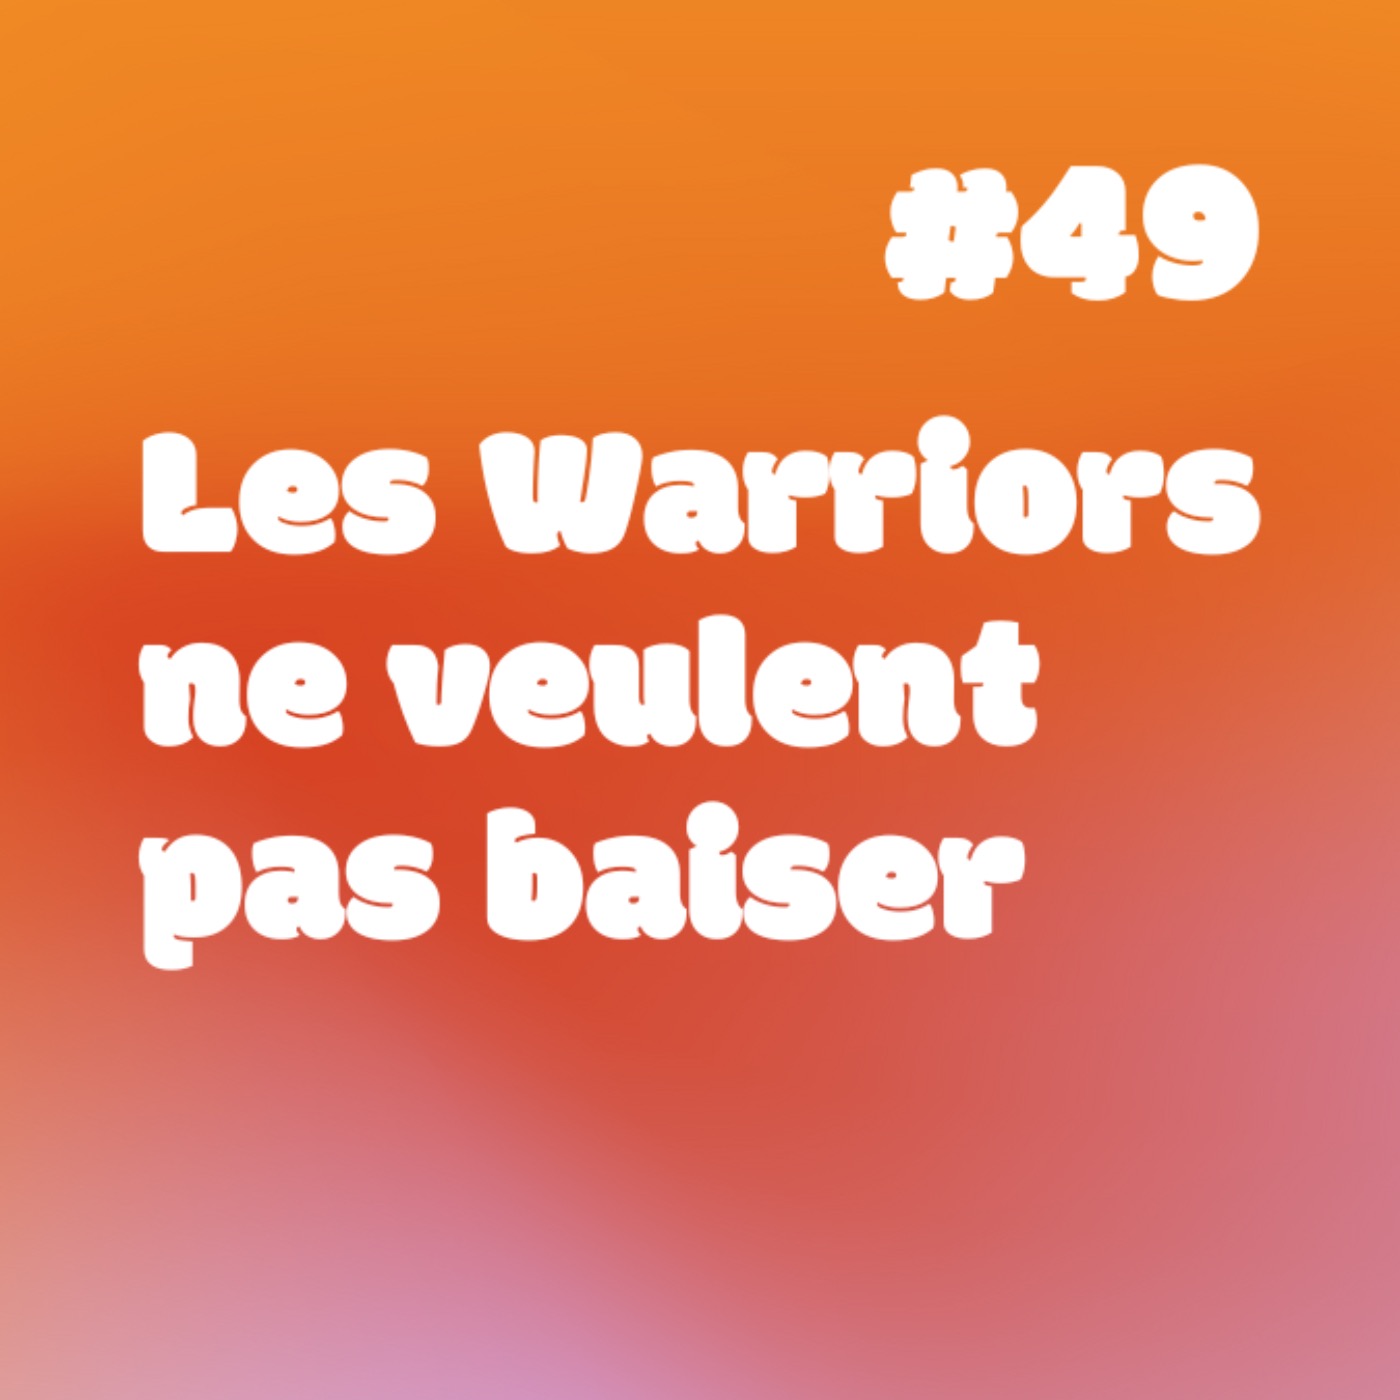 YESSS #49 Les Warriors ne veulent pas baiser